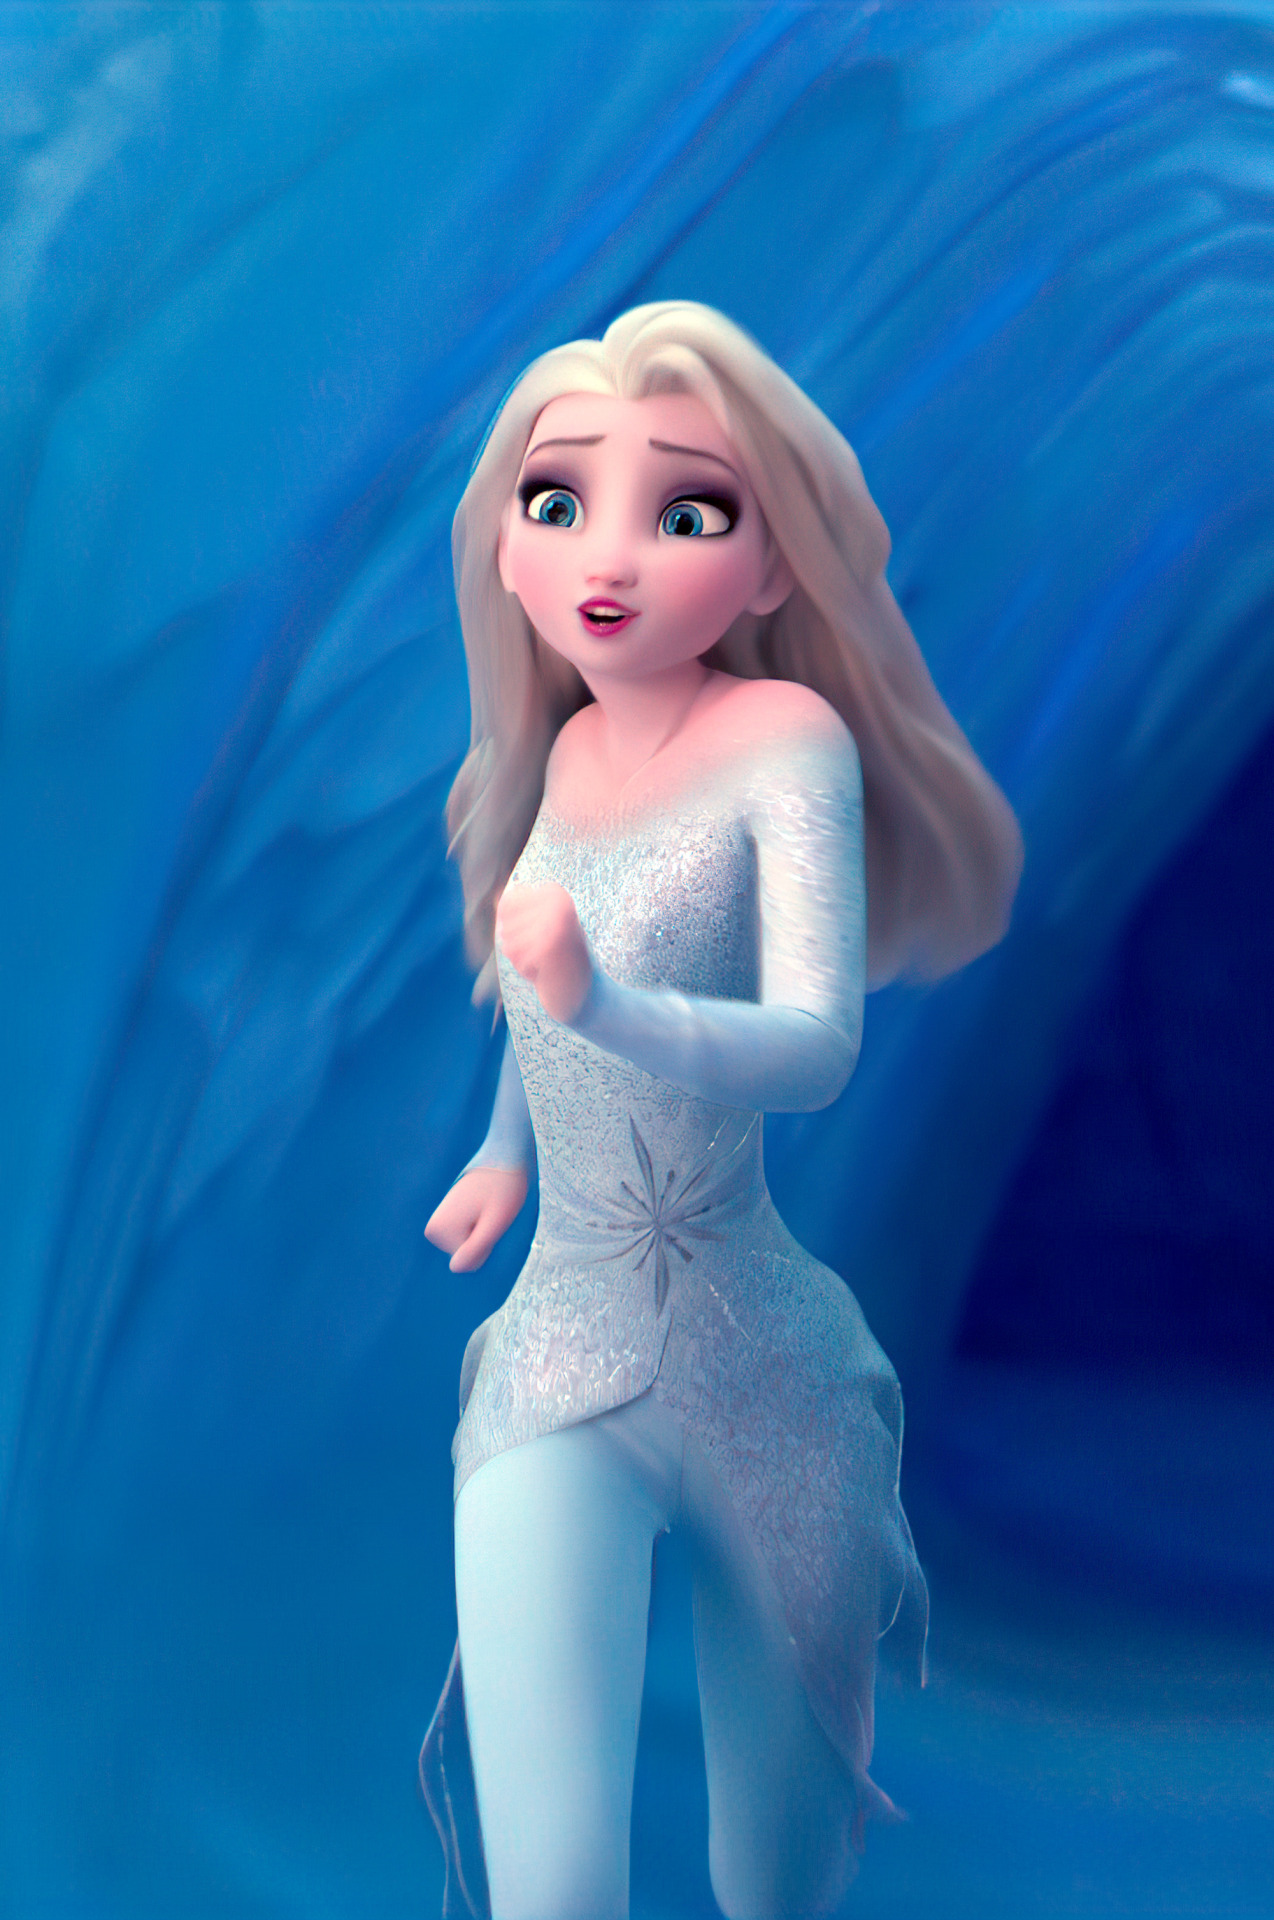 Pin By Des On Frozen Disney Frozen Elsa Art Disney Princess Elsa Frozen Pictures 